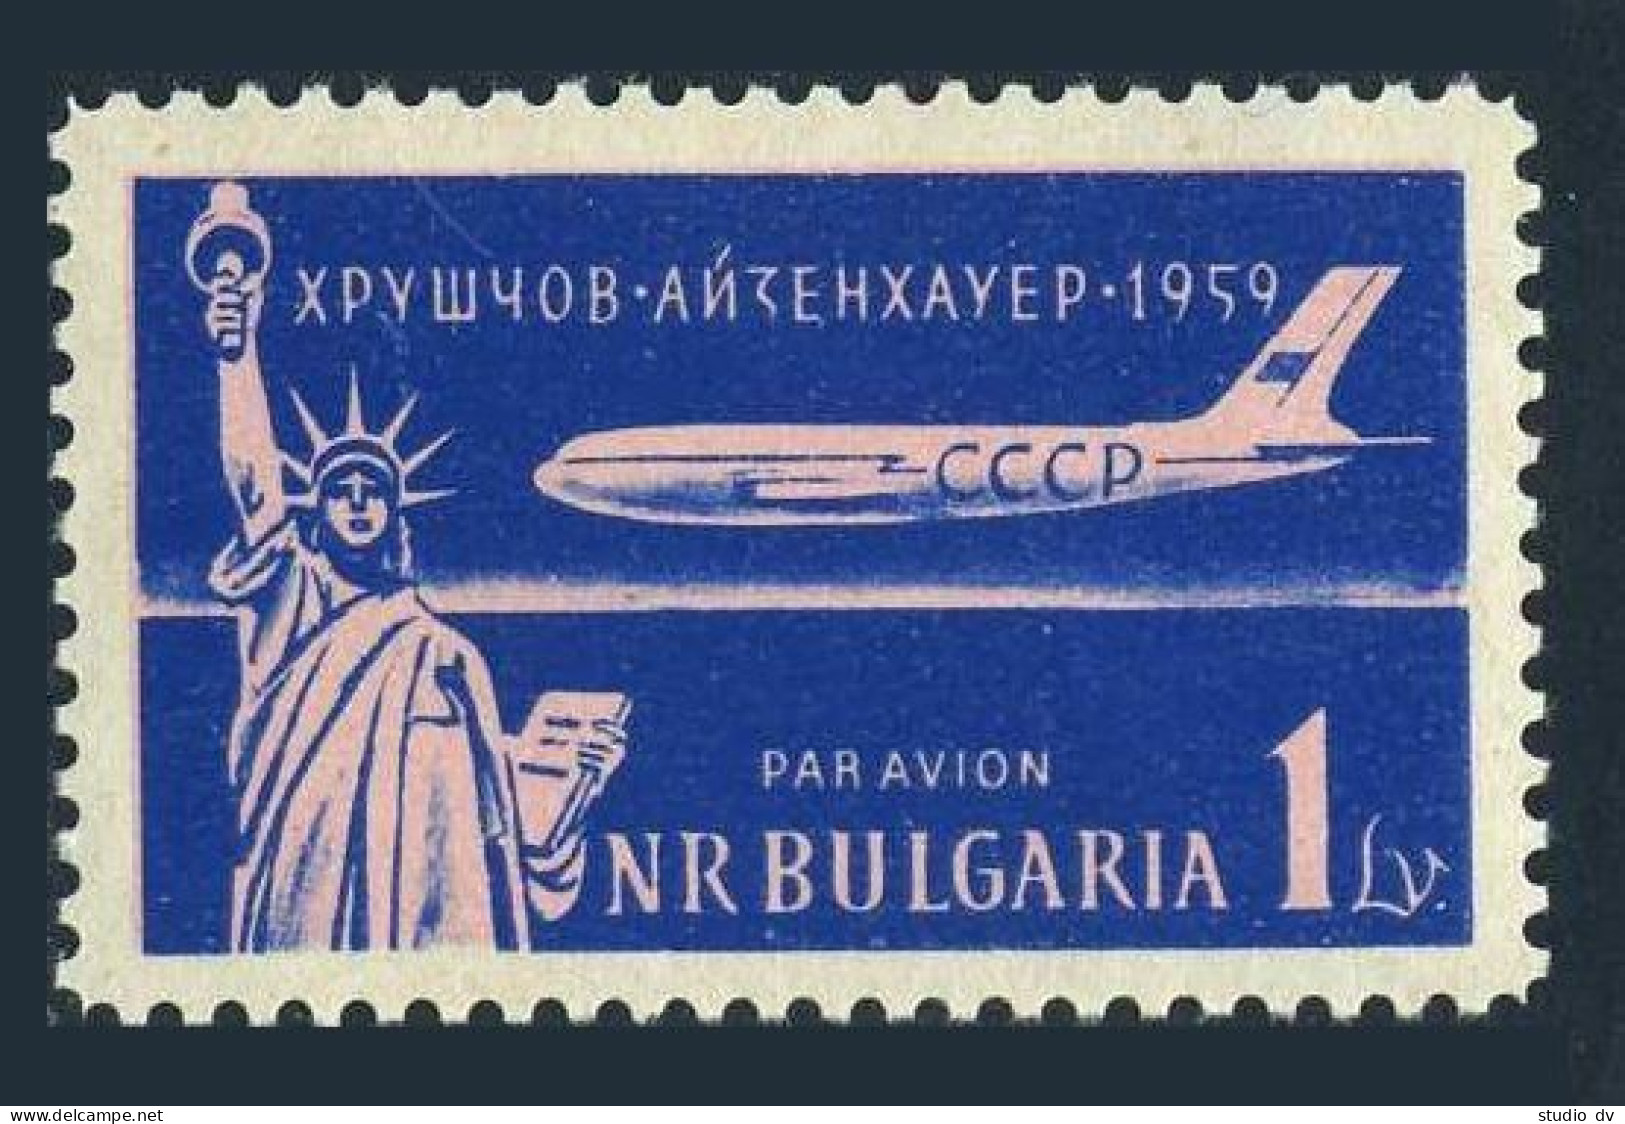 Bulgaria C78, Lightly Hinged. Mi 1141. Visit Of Khrushchev To US, 1959. TU-110. - Montpelier